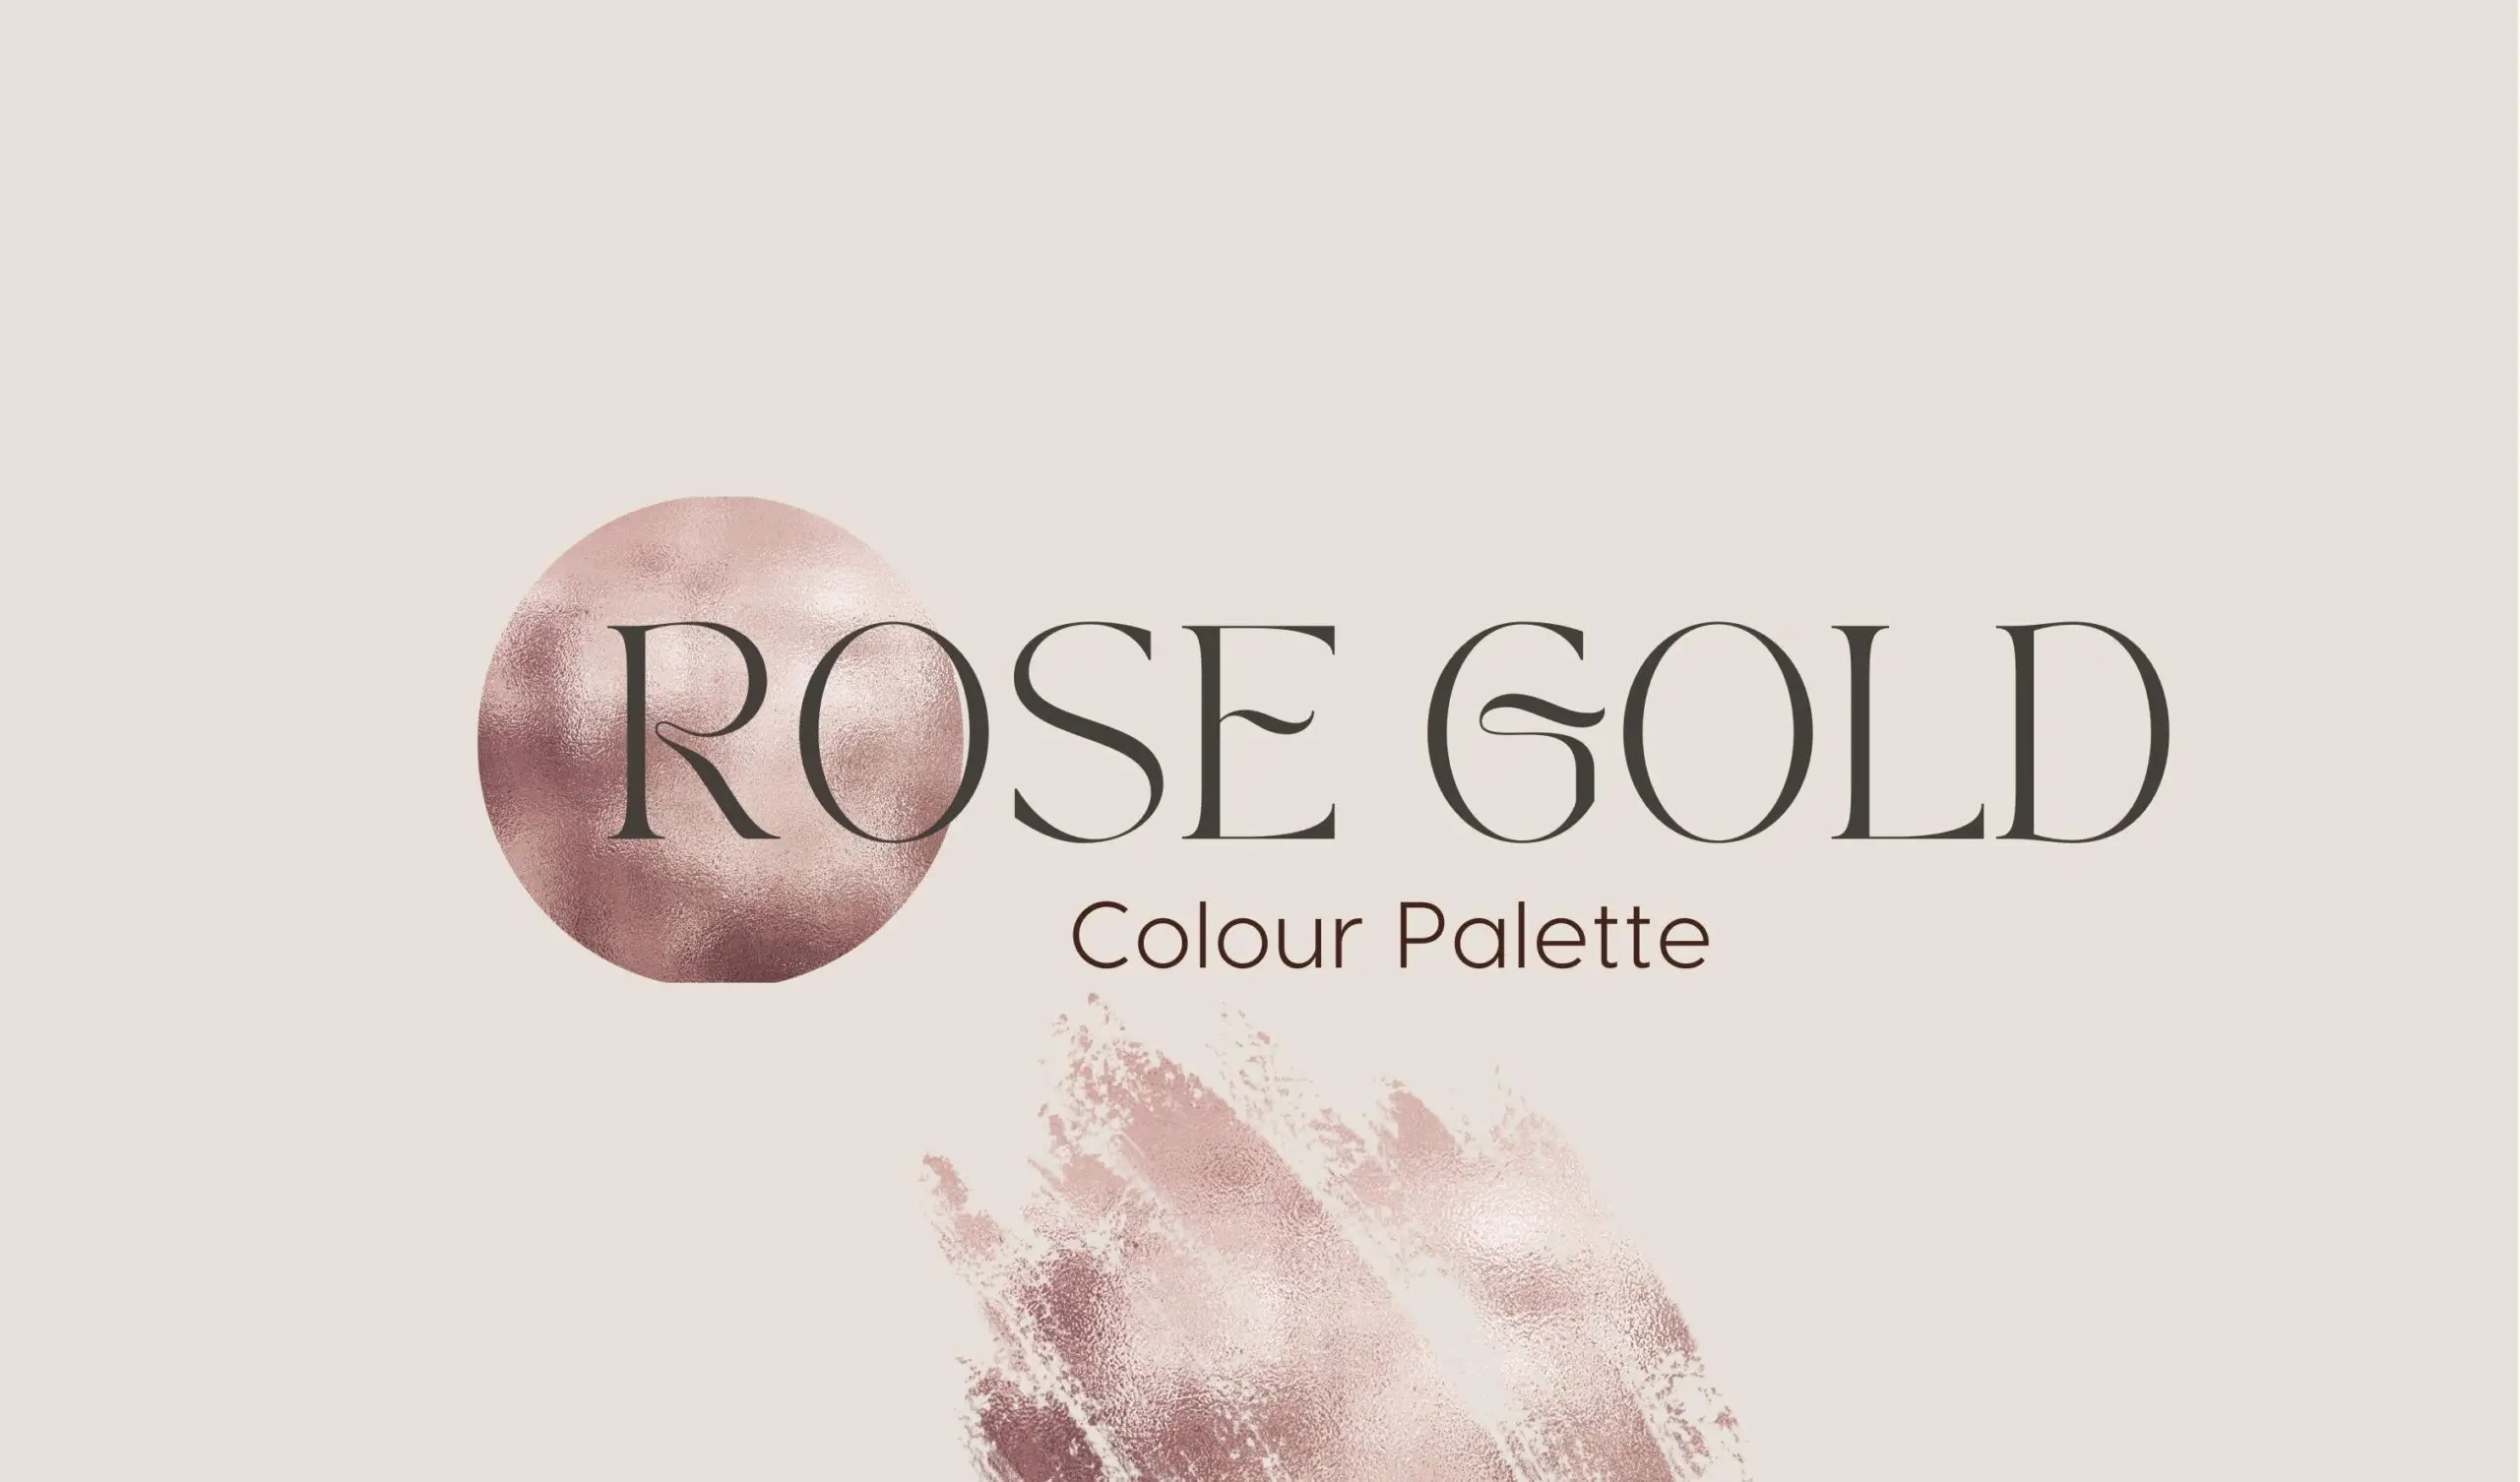 Rose gold colour palette